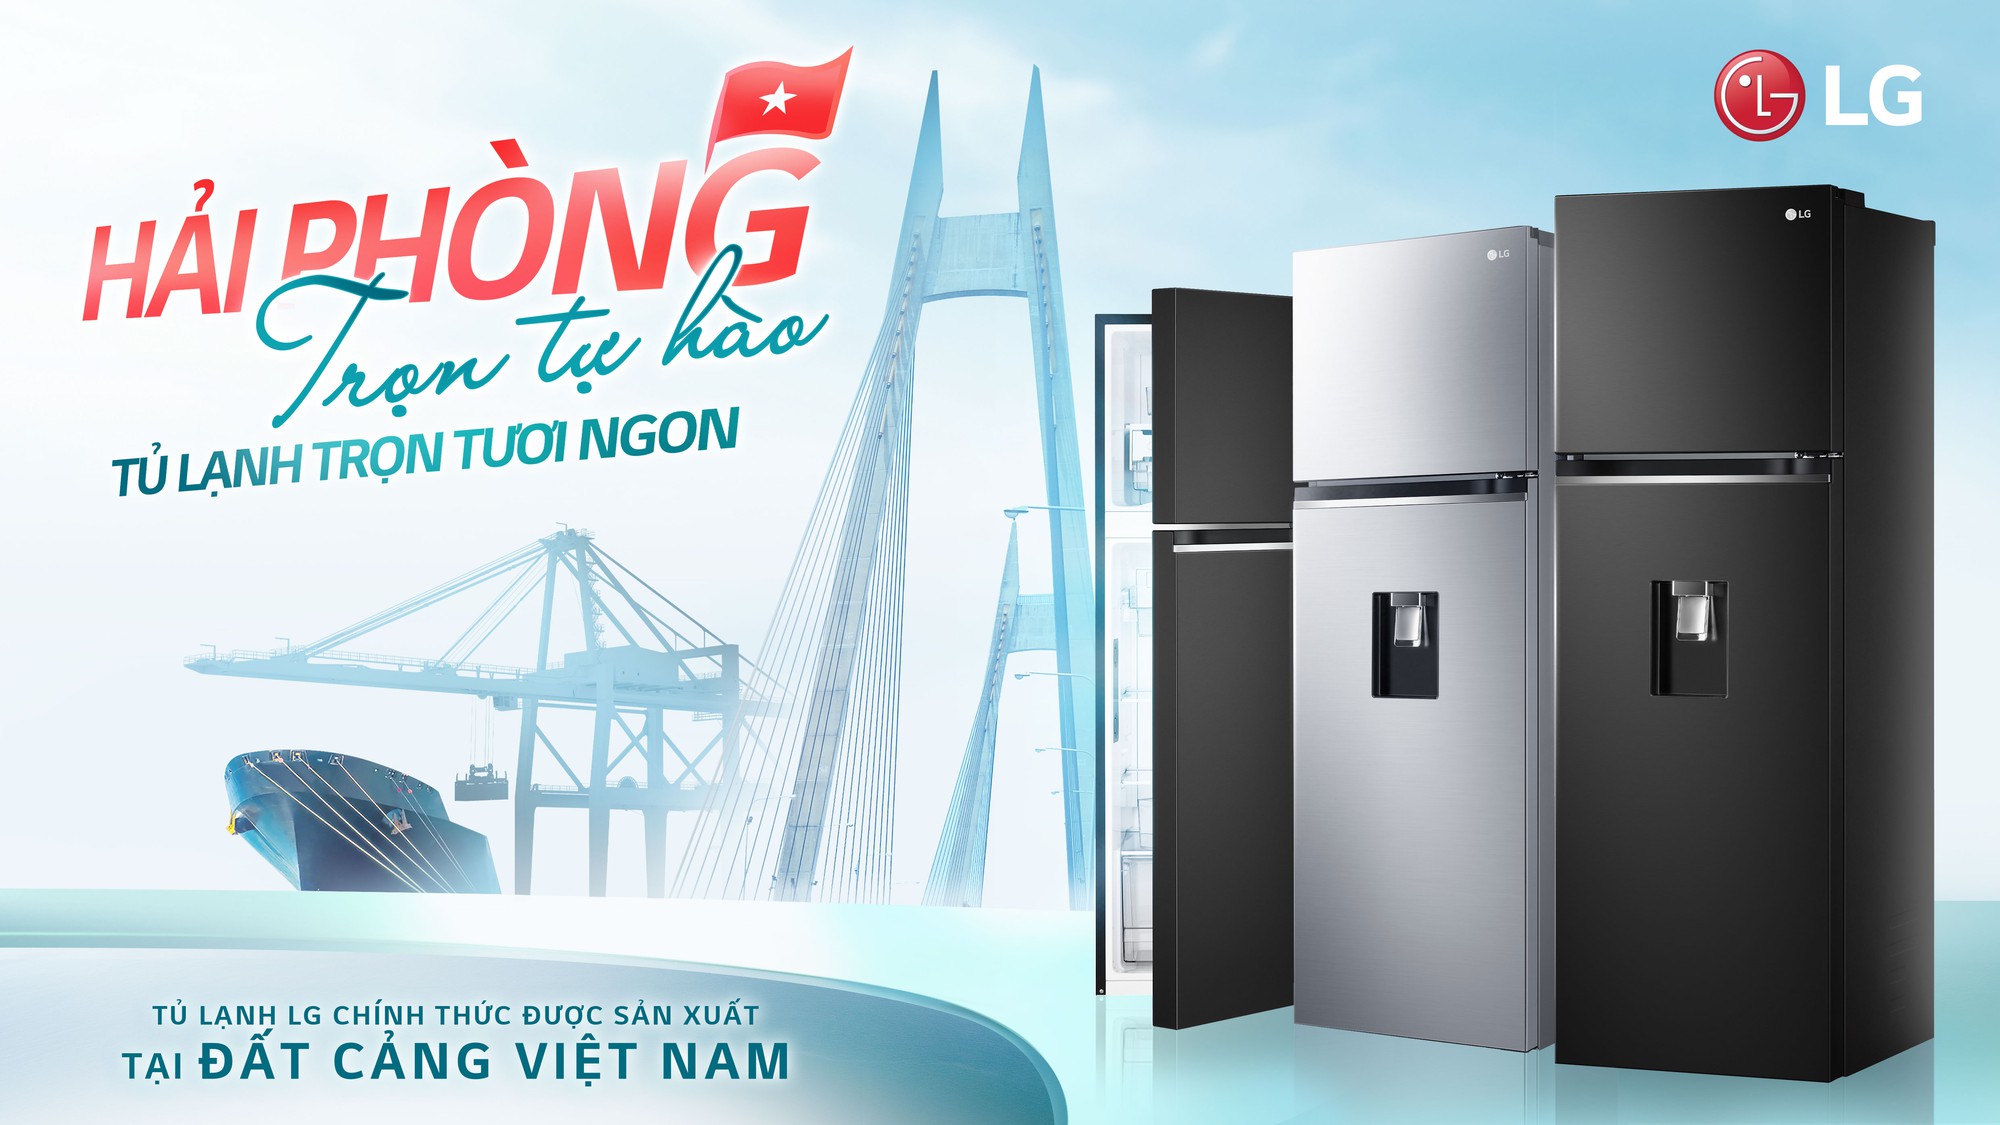 Khi các sản phẩm gia dụng đẳng cấp quốc tế được sản xuất tại Việt Nam - Ảnh 5.